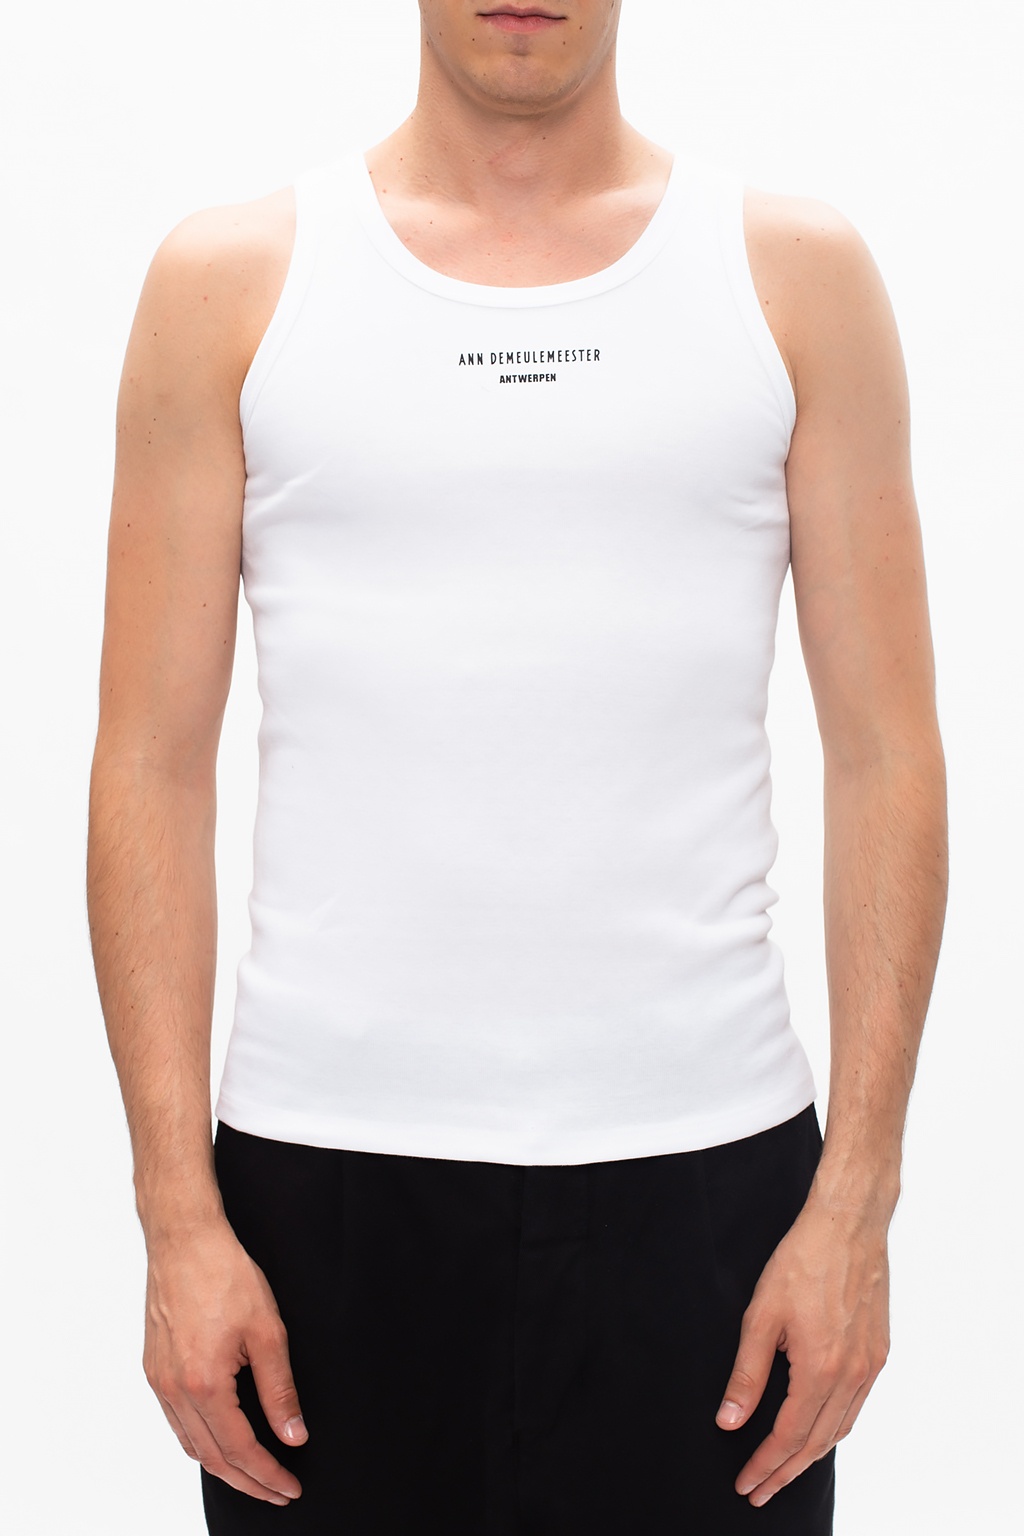 Ann Demeulemeester Logo tank top | Men's Clothing | Vitkac